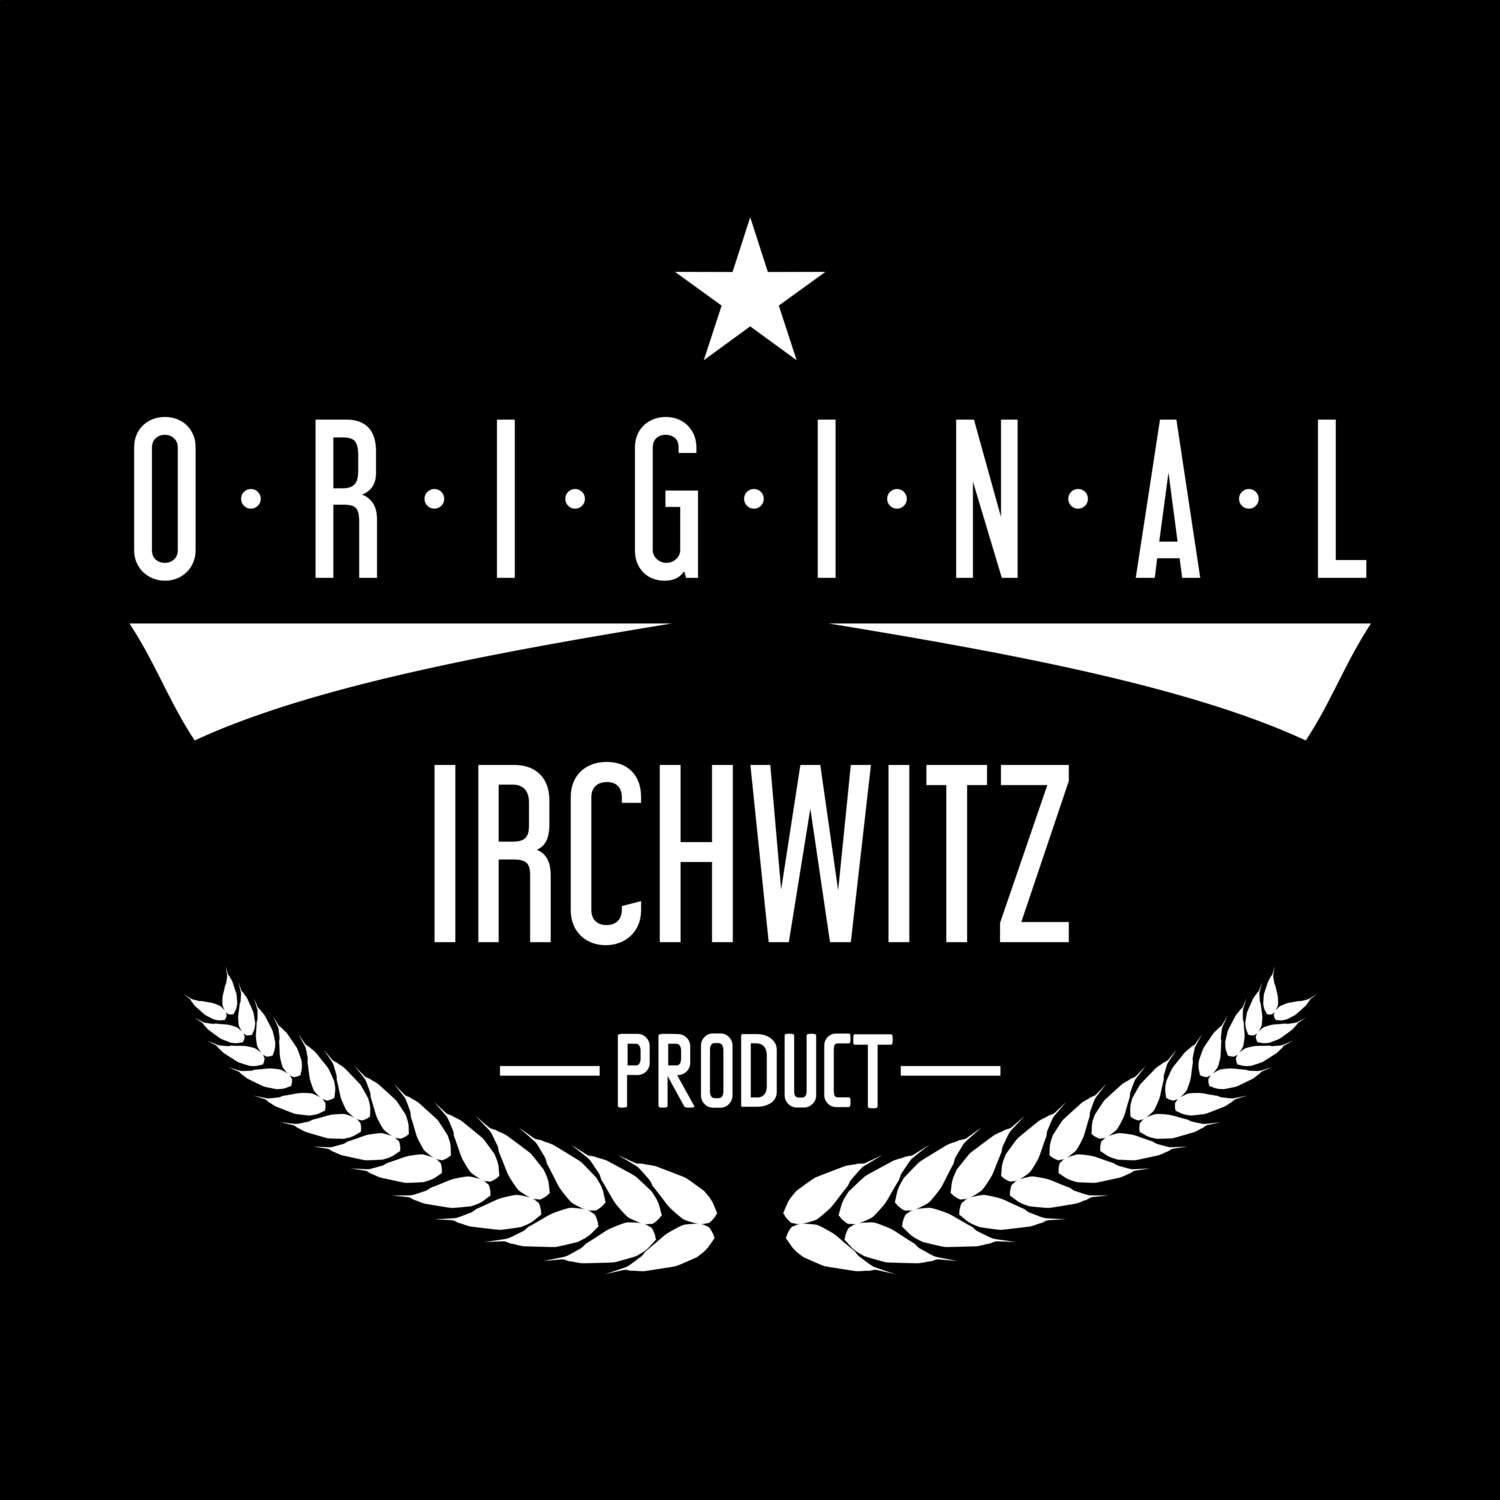 Irchwitz T-Shirt »Original Product«